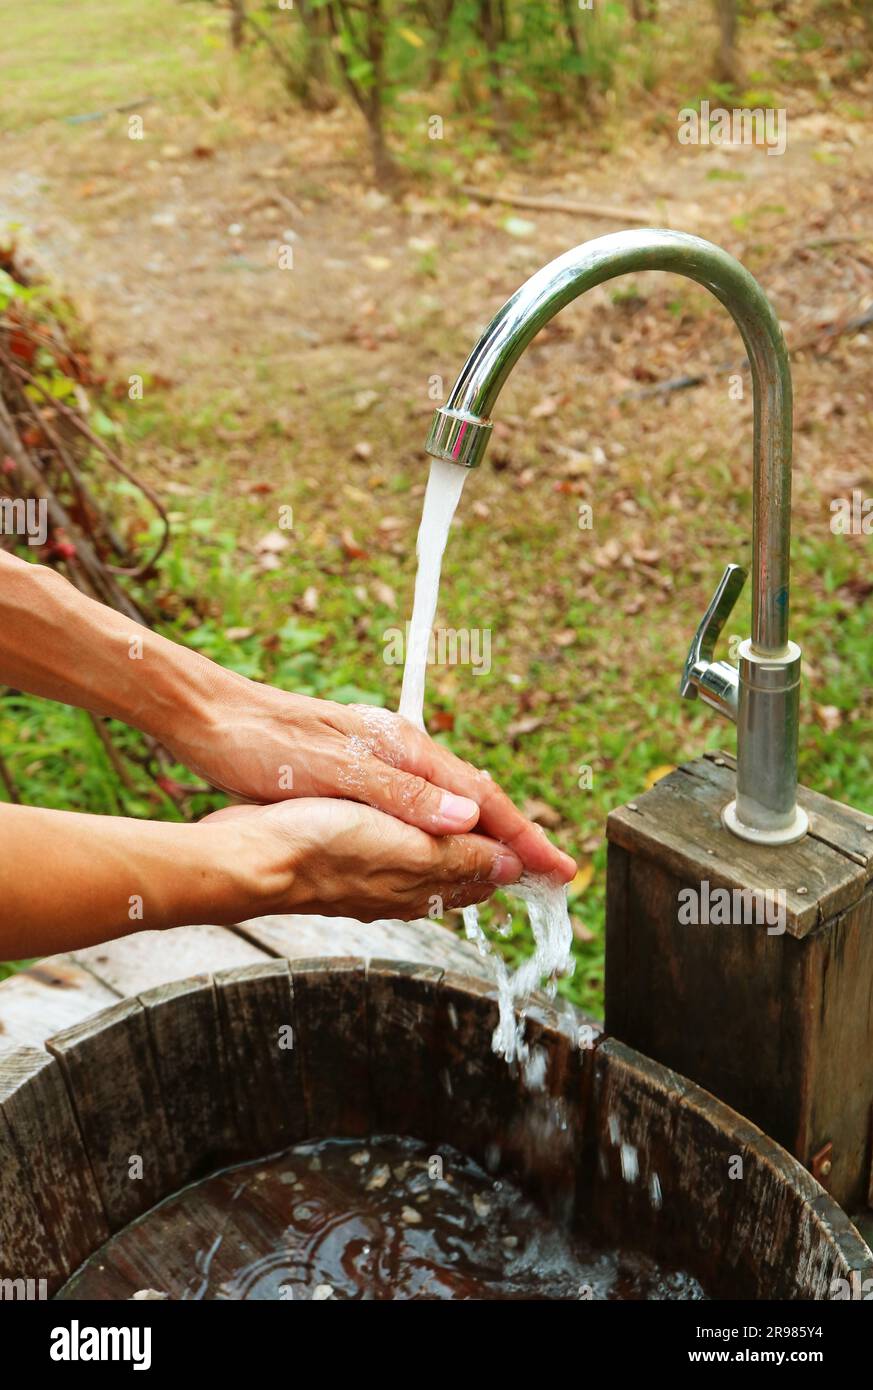 Die Hände des Mannes unter dem fließenden Wasser vom Wasserhahn im Garten Stockfoto